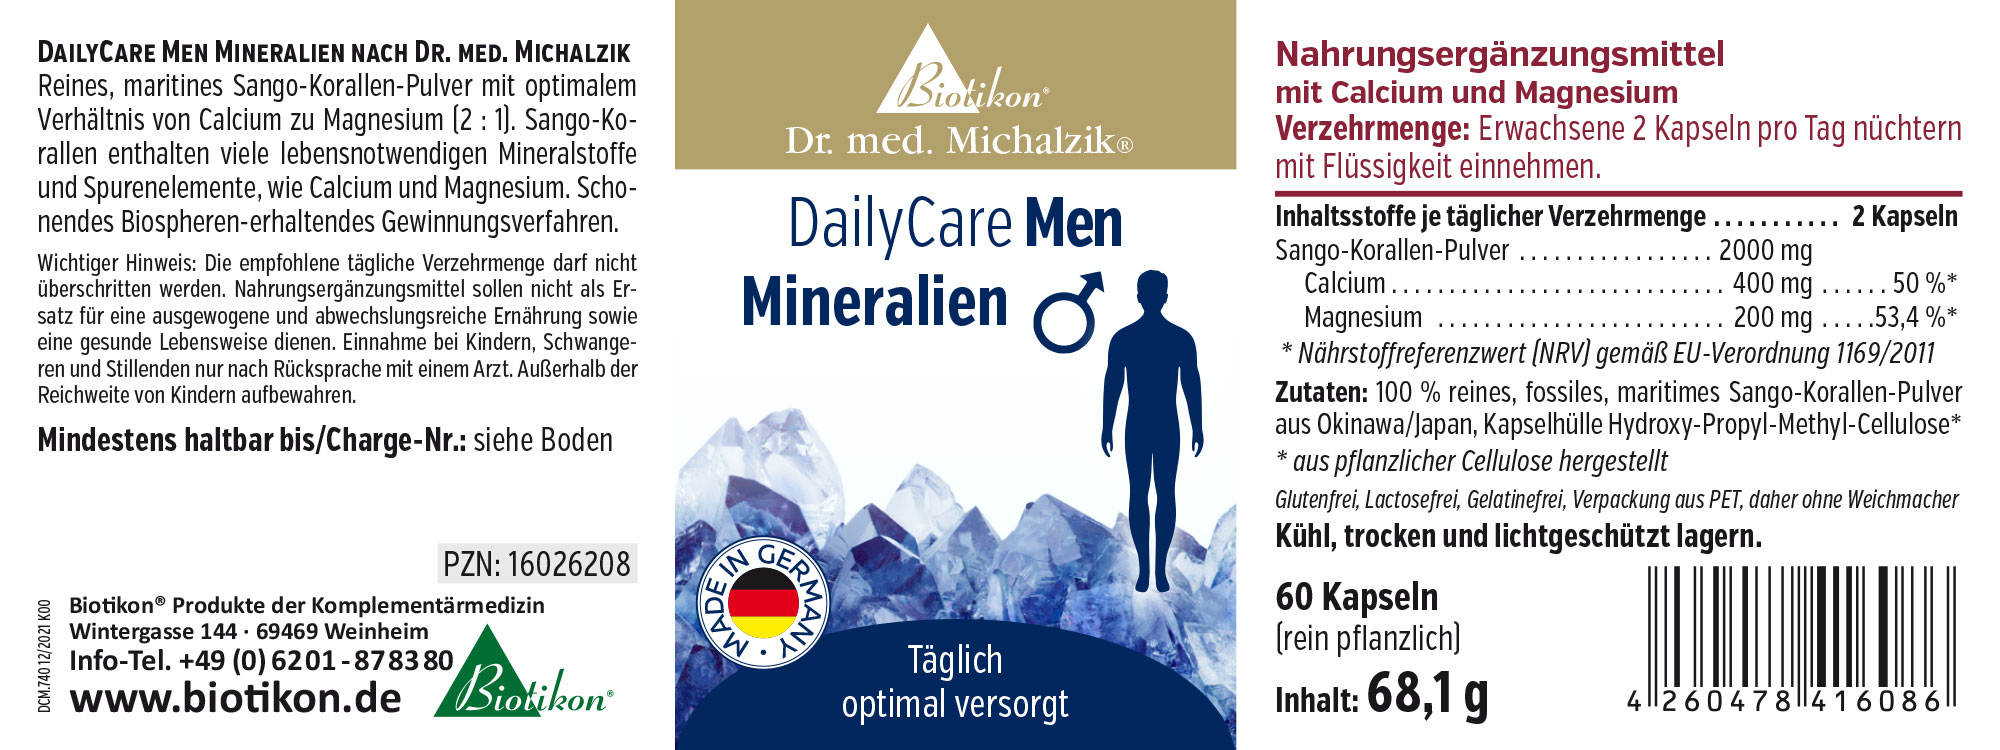 DailyCare Men Mineralien